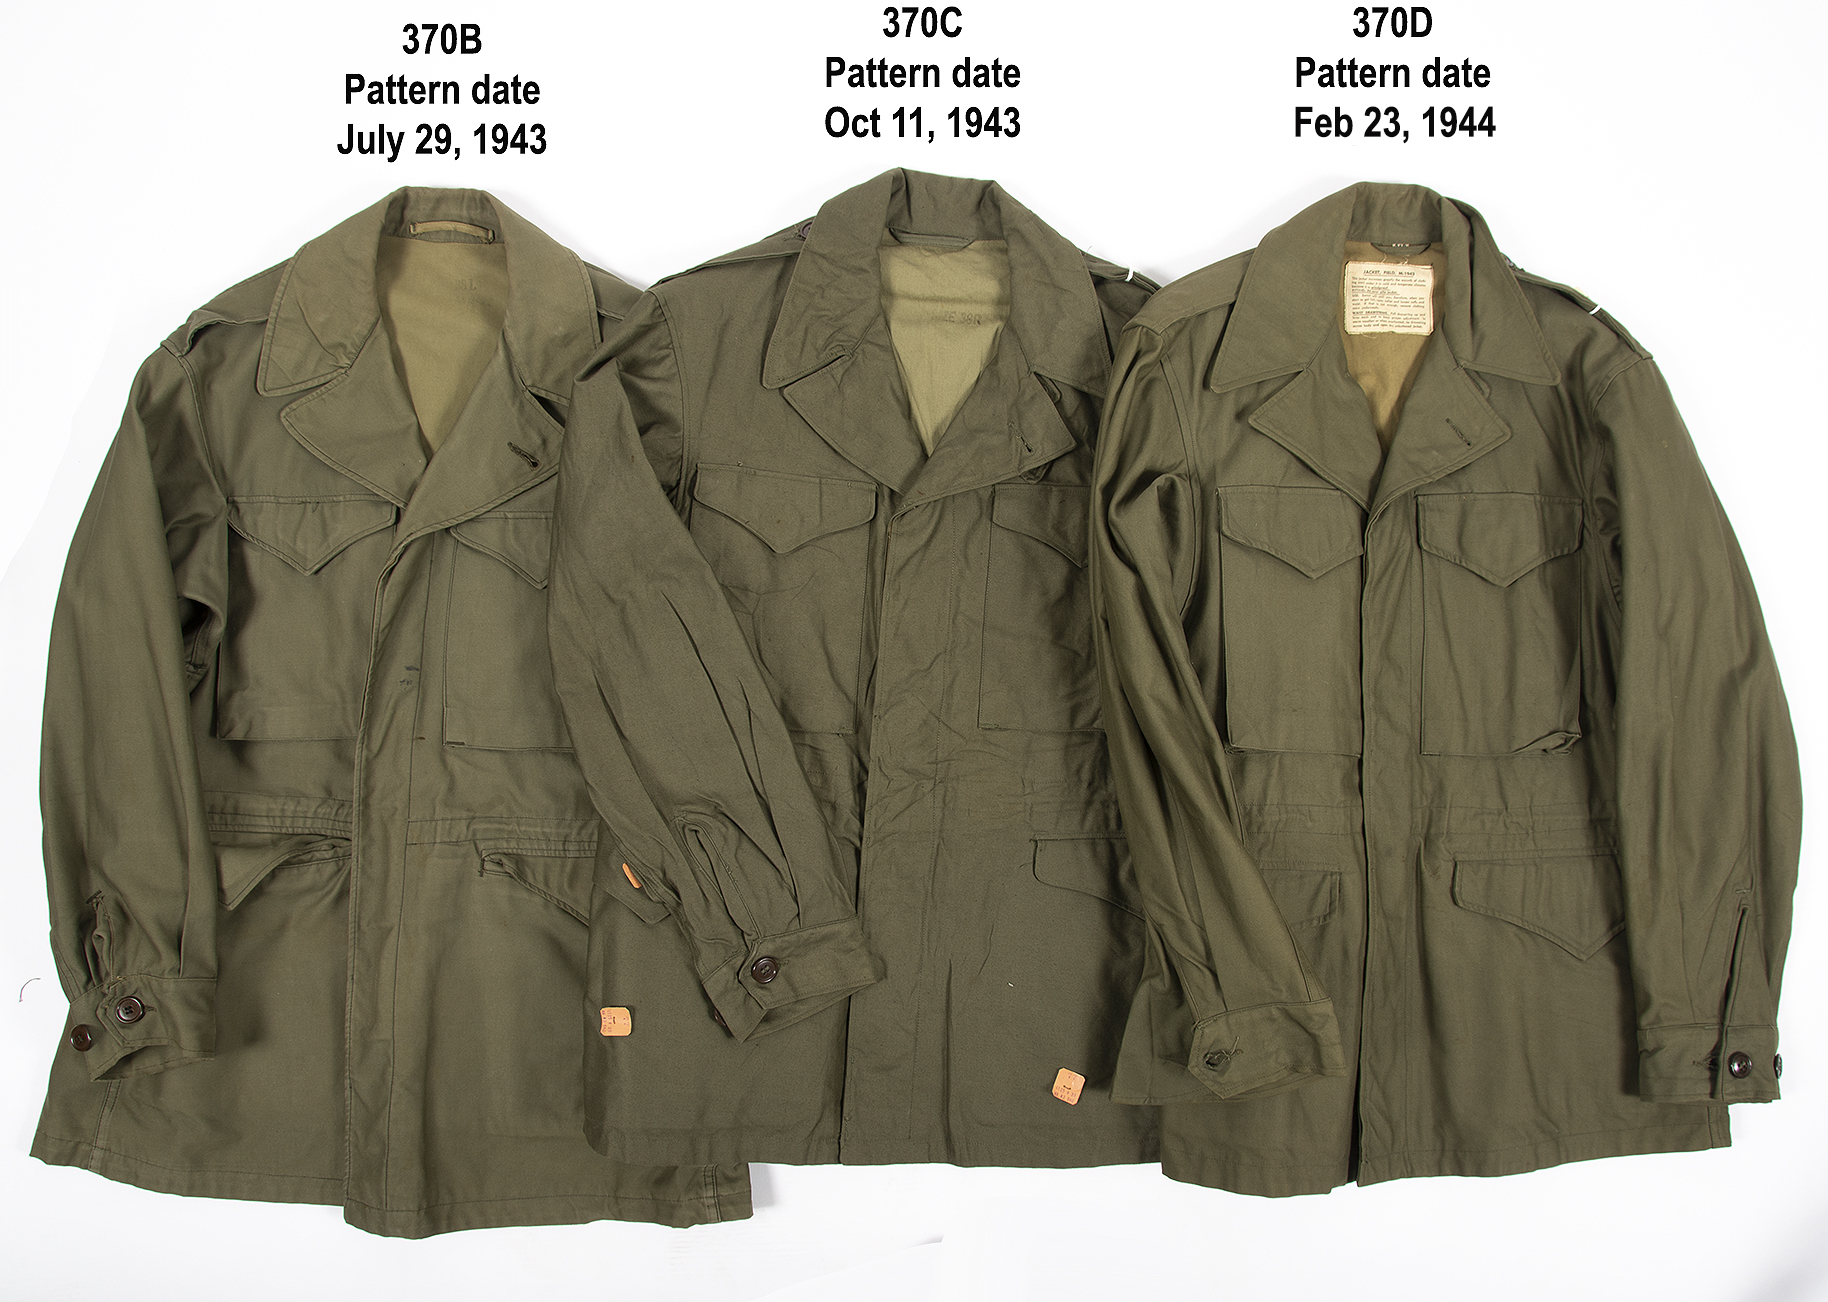 1943 field jacket